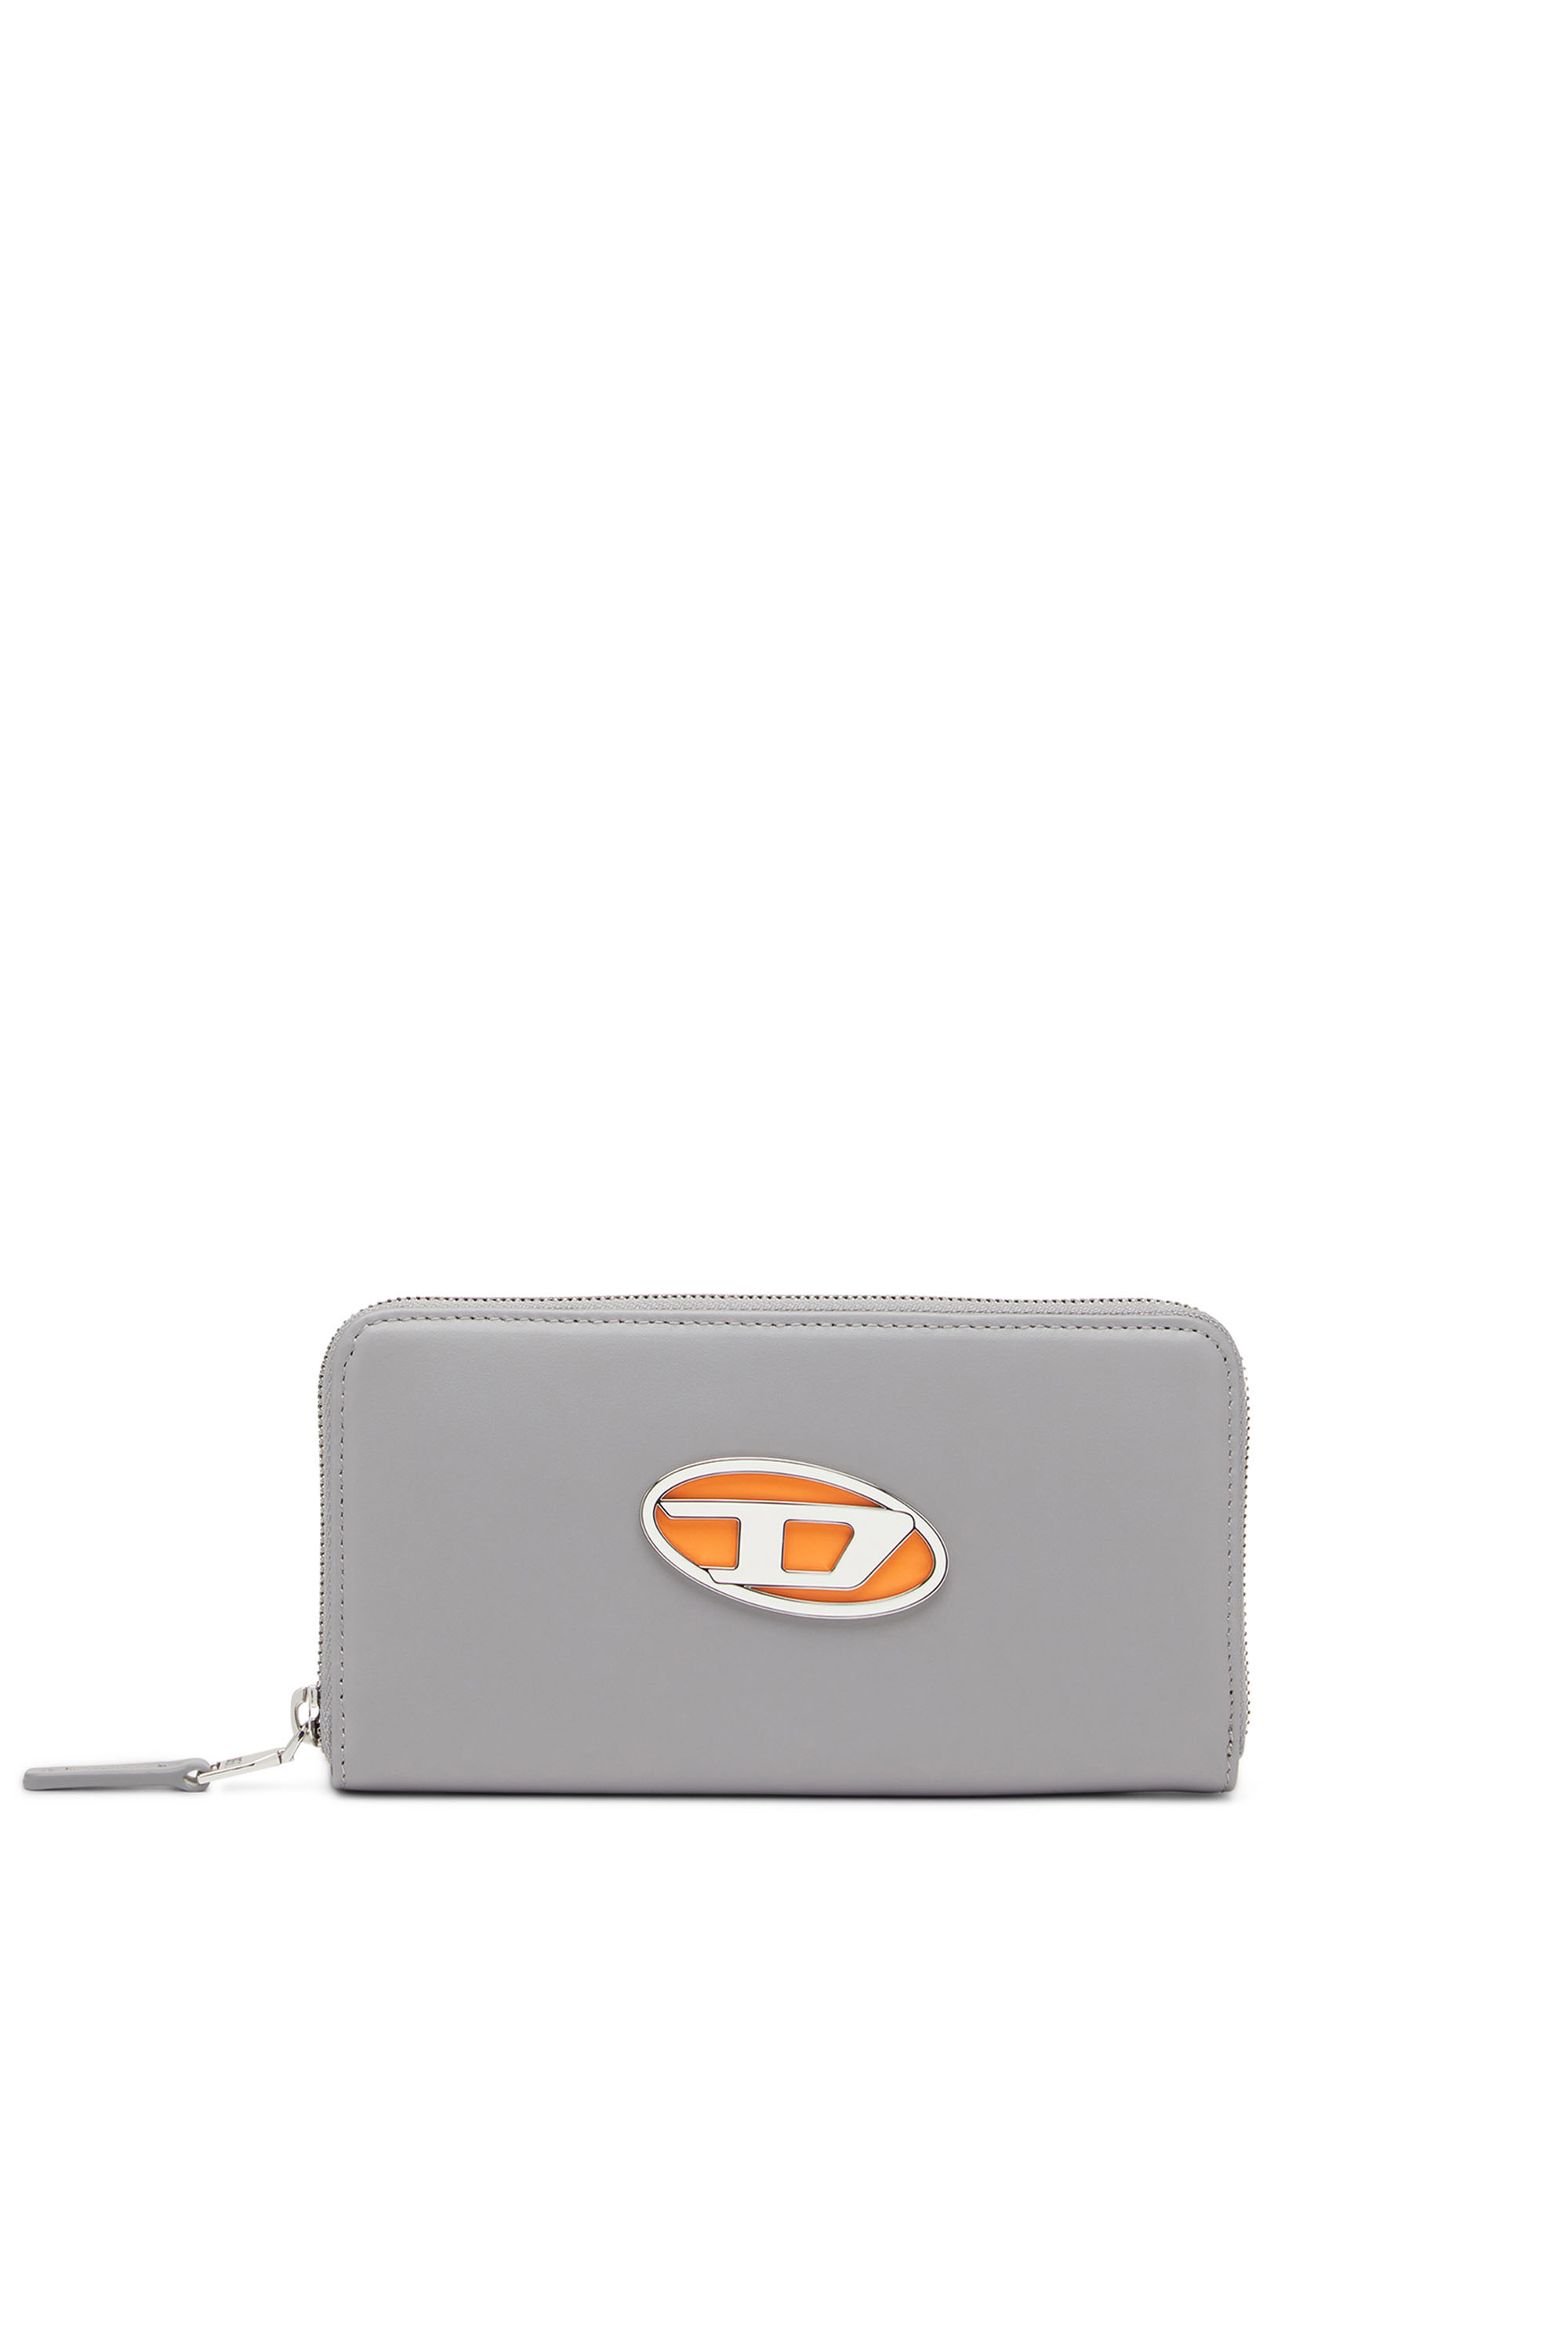 Diesel Wallet - 1DR GARNET wallet grey